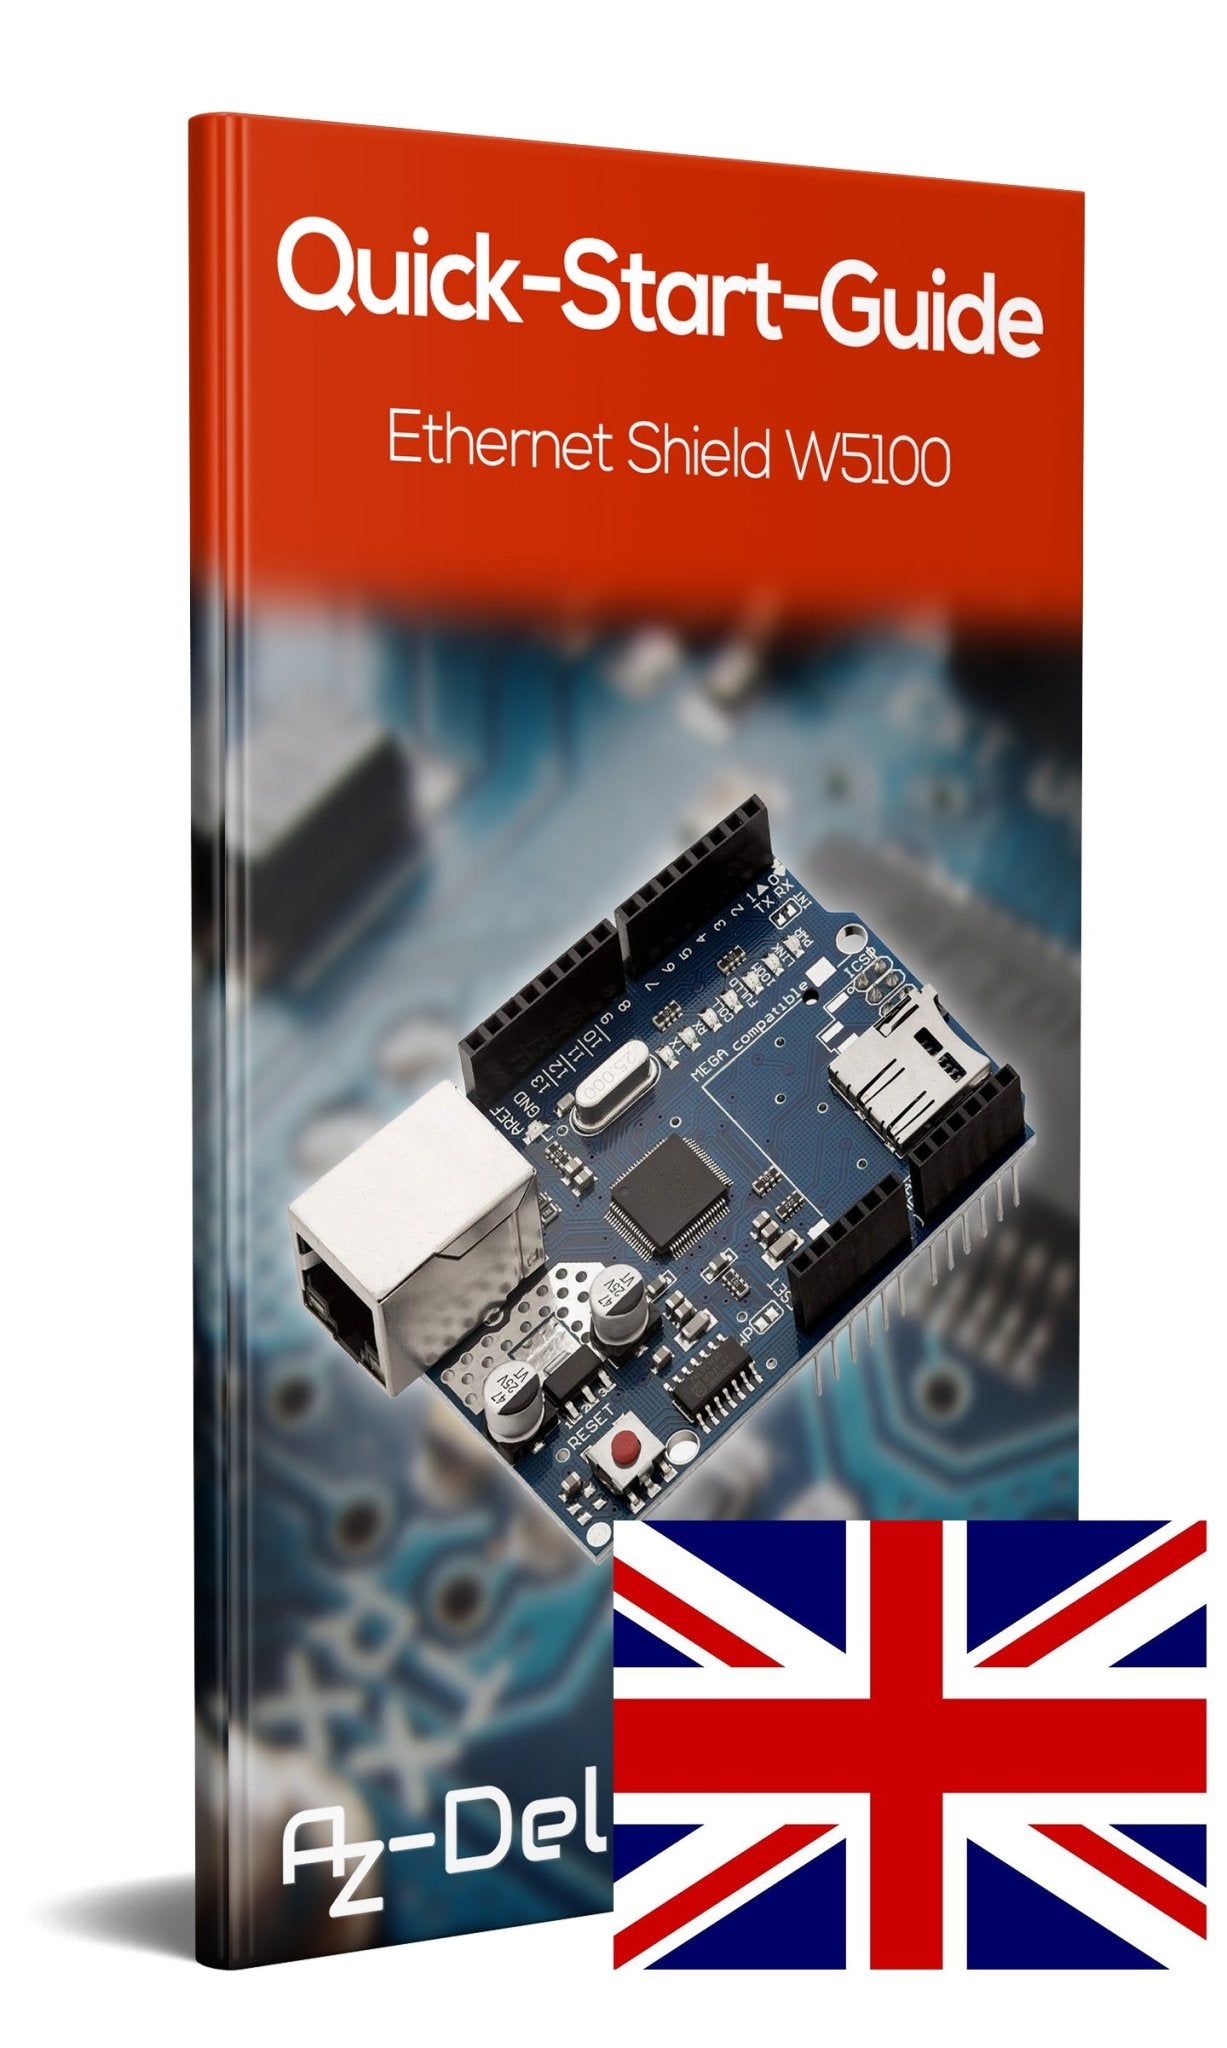 Ethernet Shield W5100 mit MicroSD-Karten Slot - AZ-Delivery